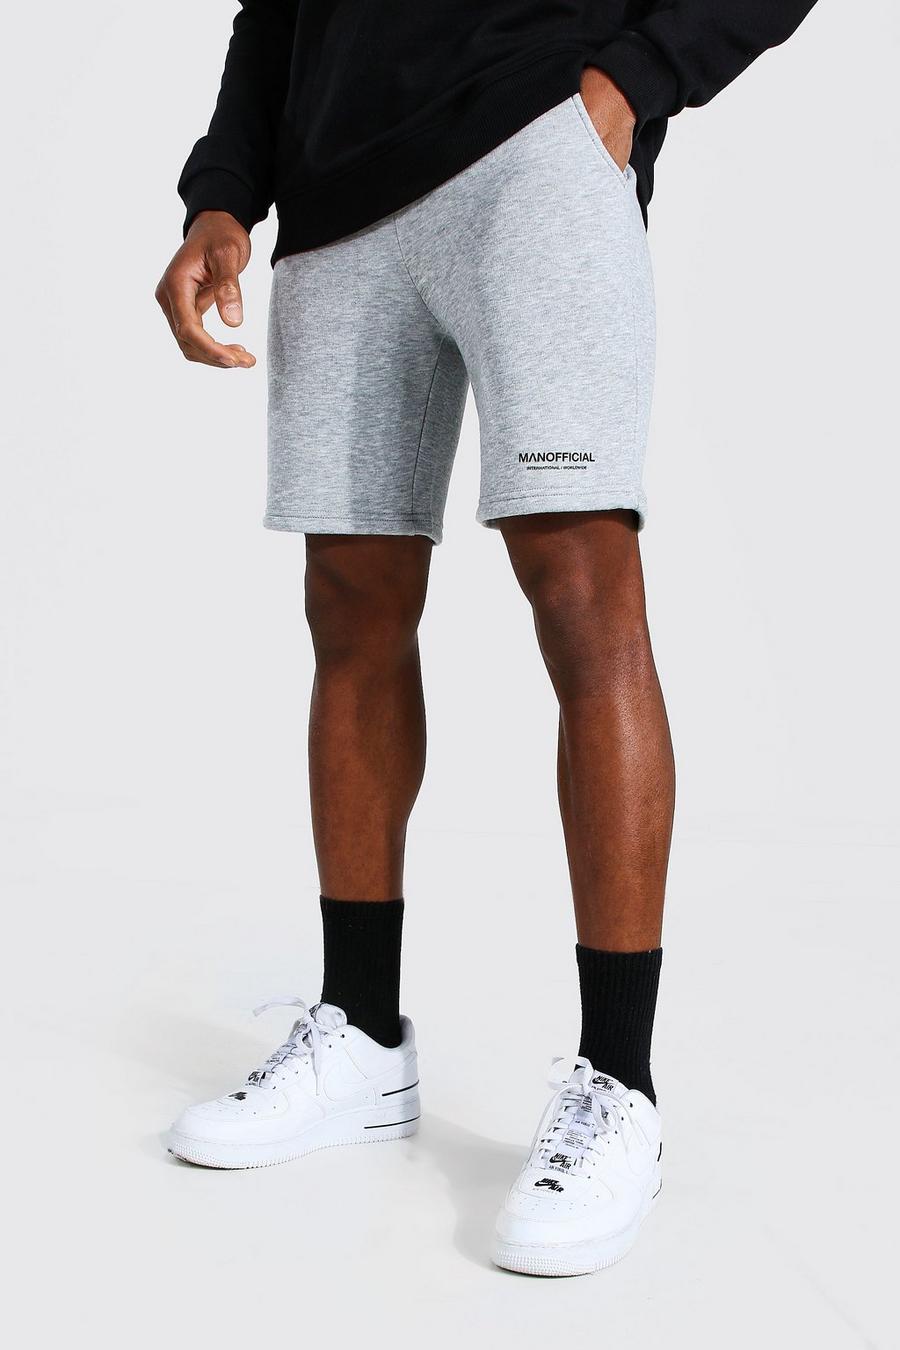 Pantalones cortos de punto medio ajustados en cintura Man Official, Marga gris image number 1